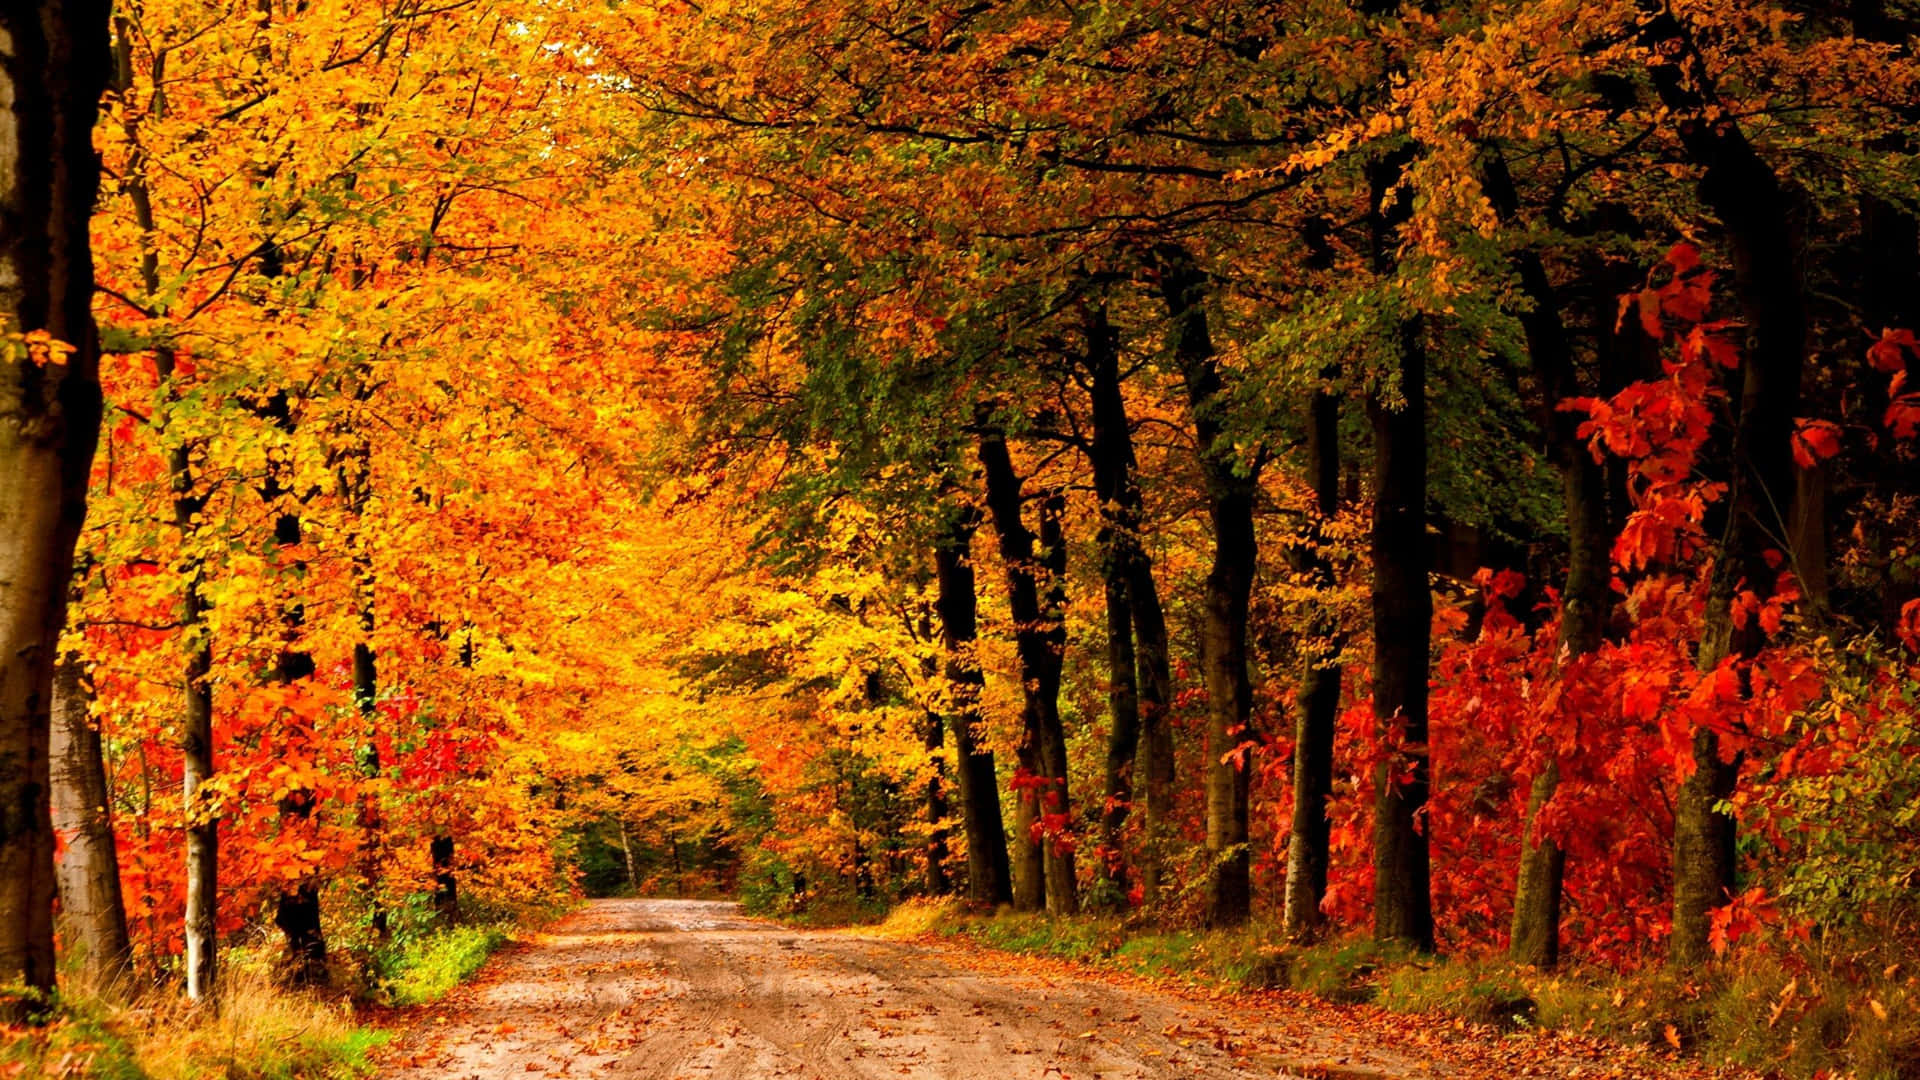 Download Autumn Trails 2560 X 1440 Wallpaper Wallpaper | Wallpapers.com